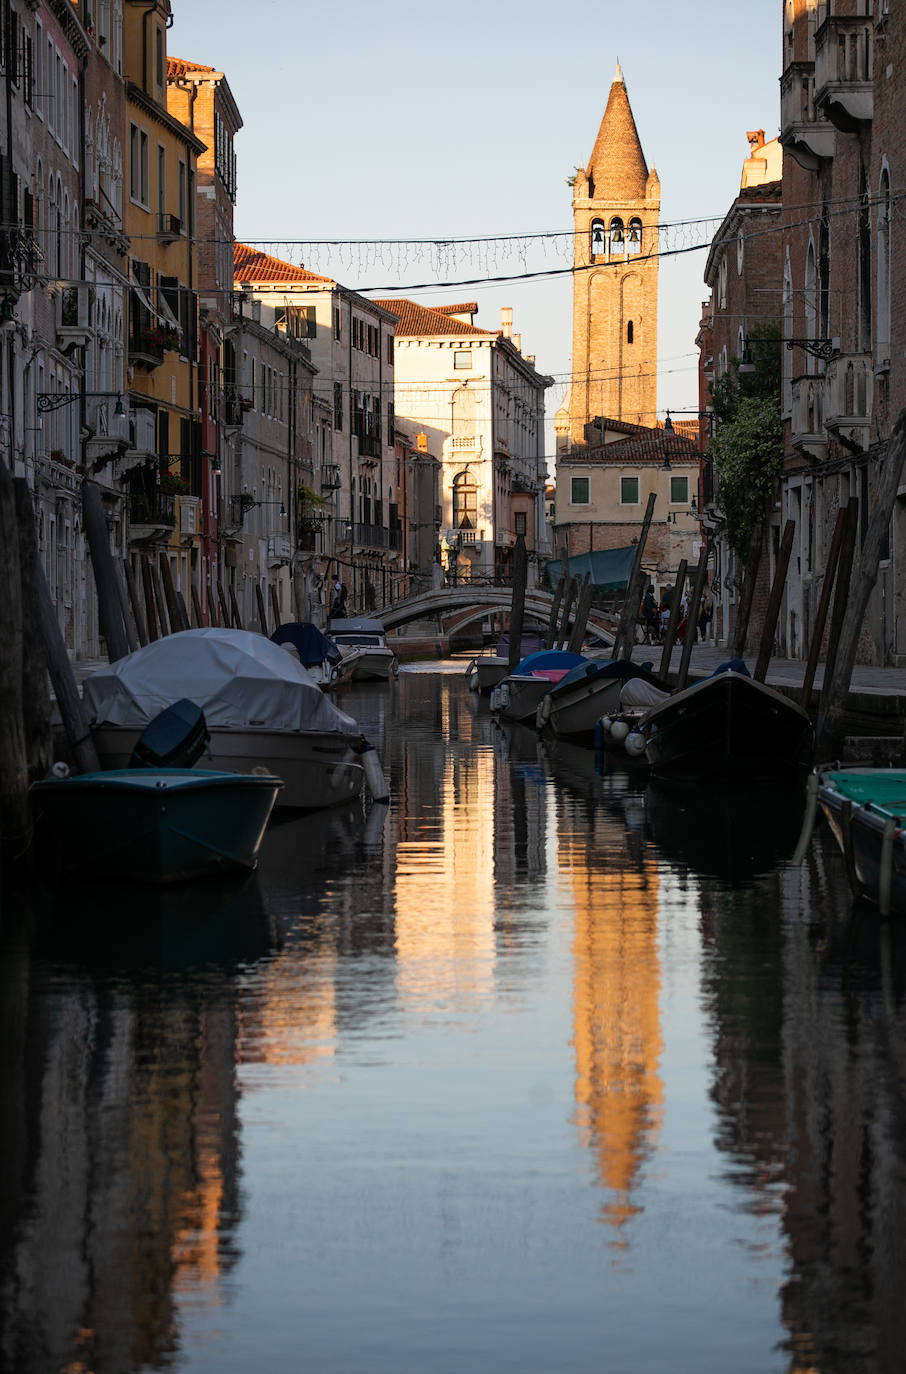 La pandemia del coronavirus dejó imágenes insólitas en una de las capitales turísticas de Europa. Recuperando poco a poco la normalidad, Venecia sigue dejando estampas únicas al atardecer.